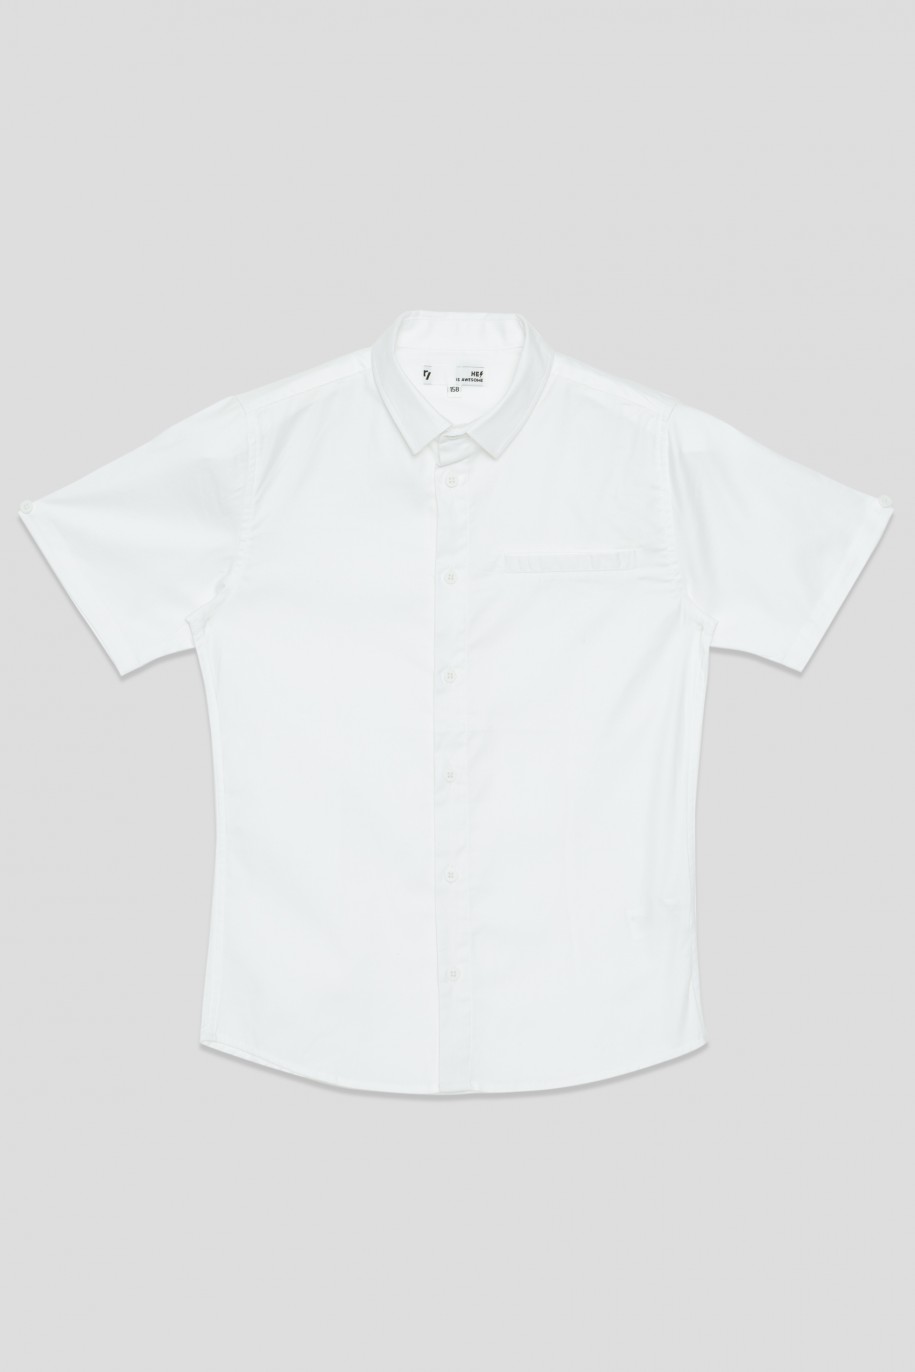 Biała koszula z krótkim rękawem dla chłopaka - 33853